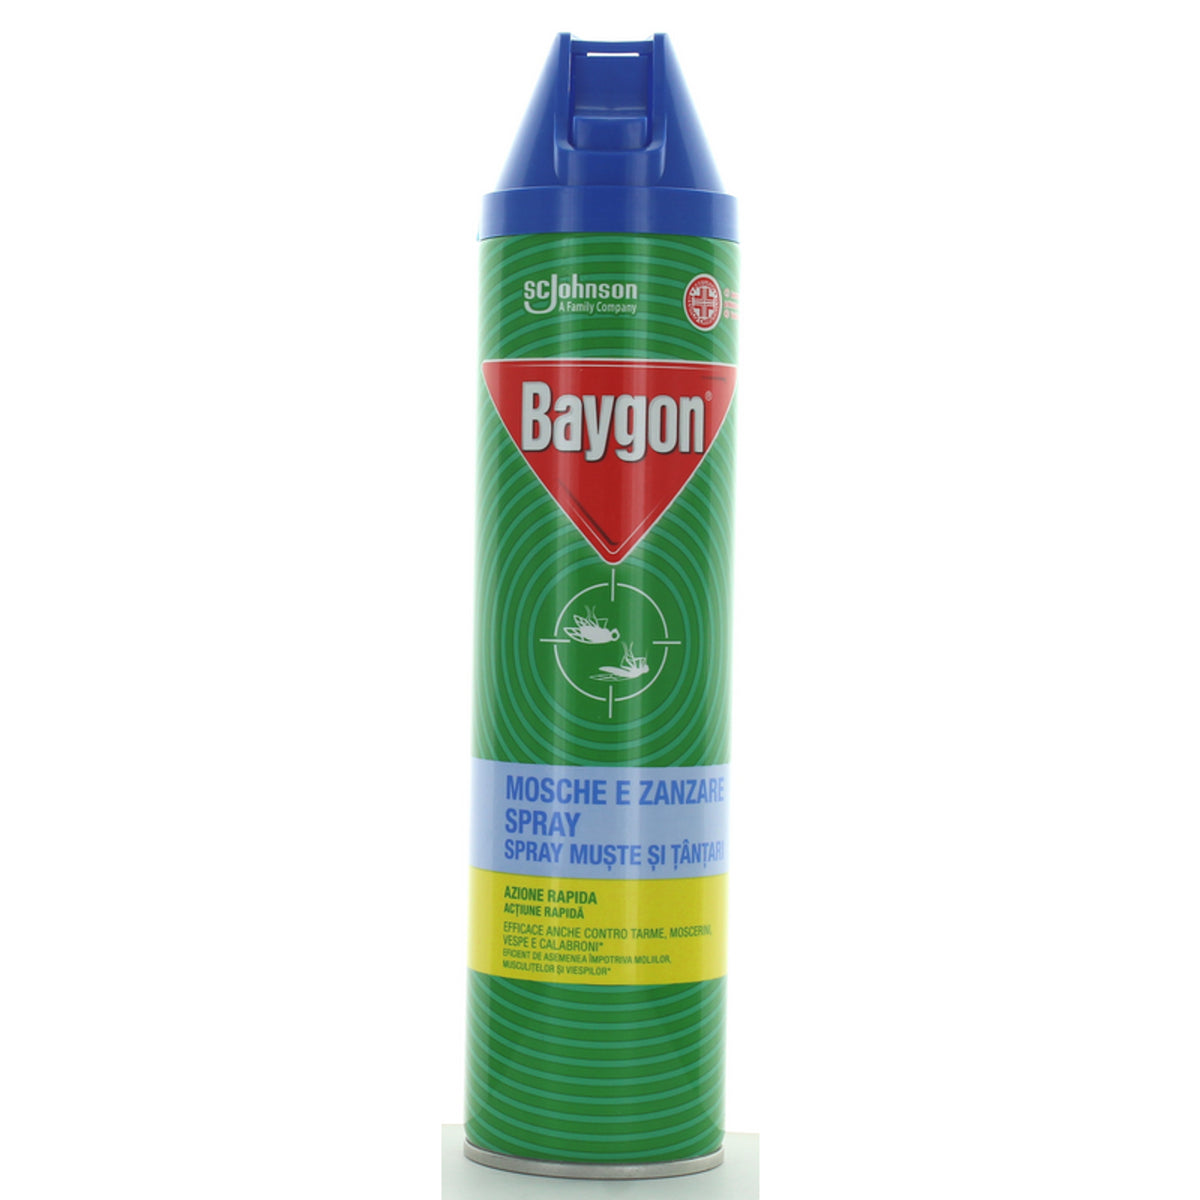 Baygonblau -Insektizidsprayfliegen und Mücken 400 ml